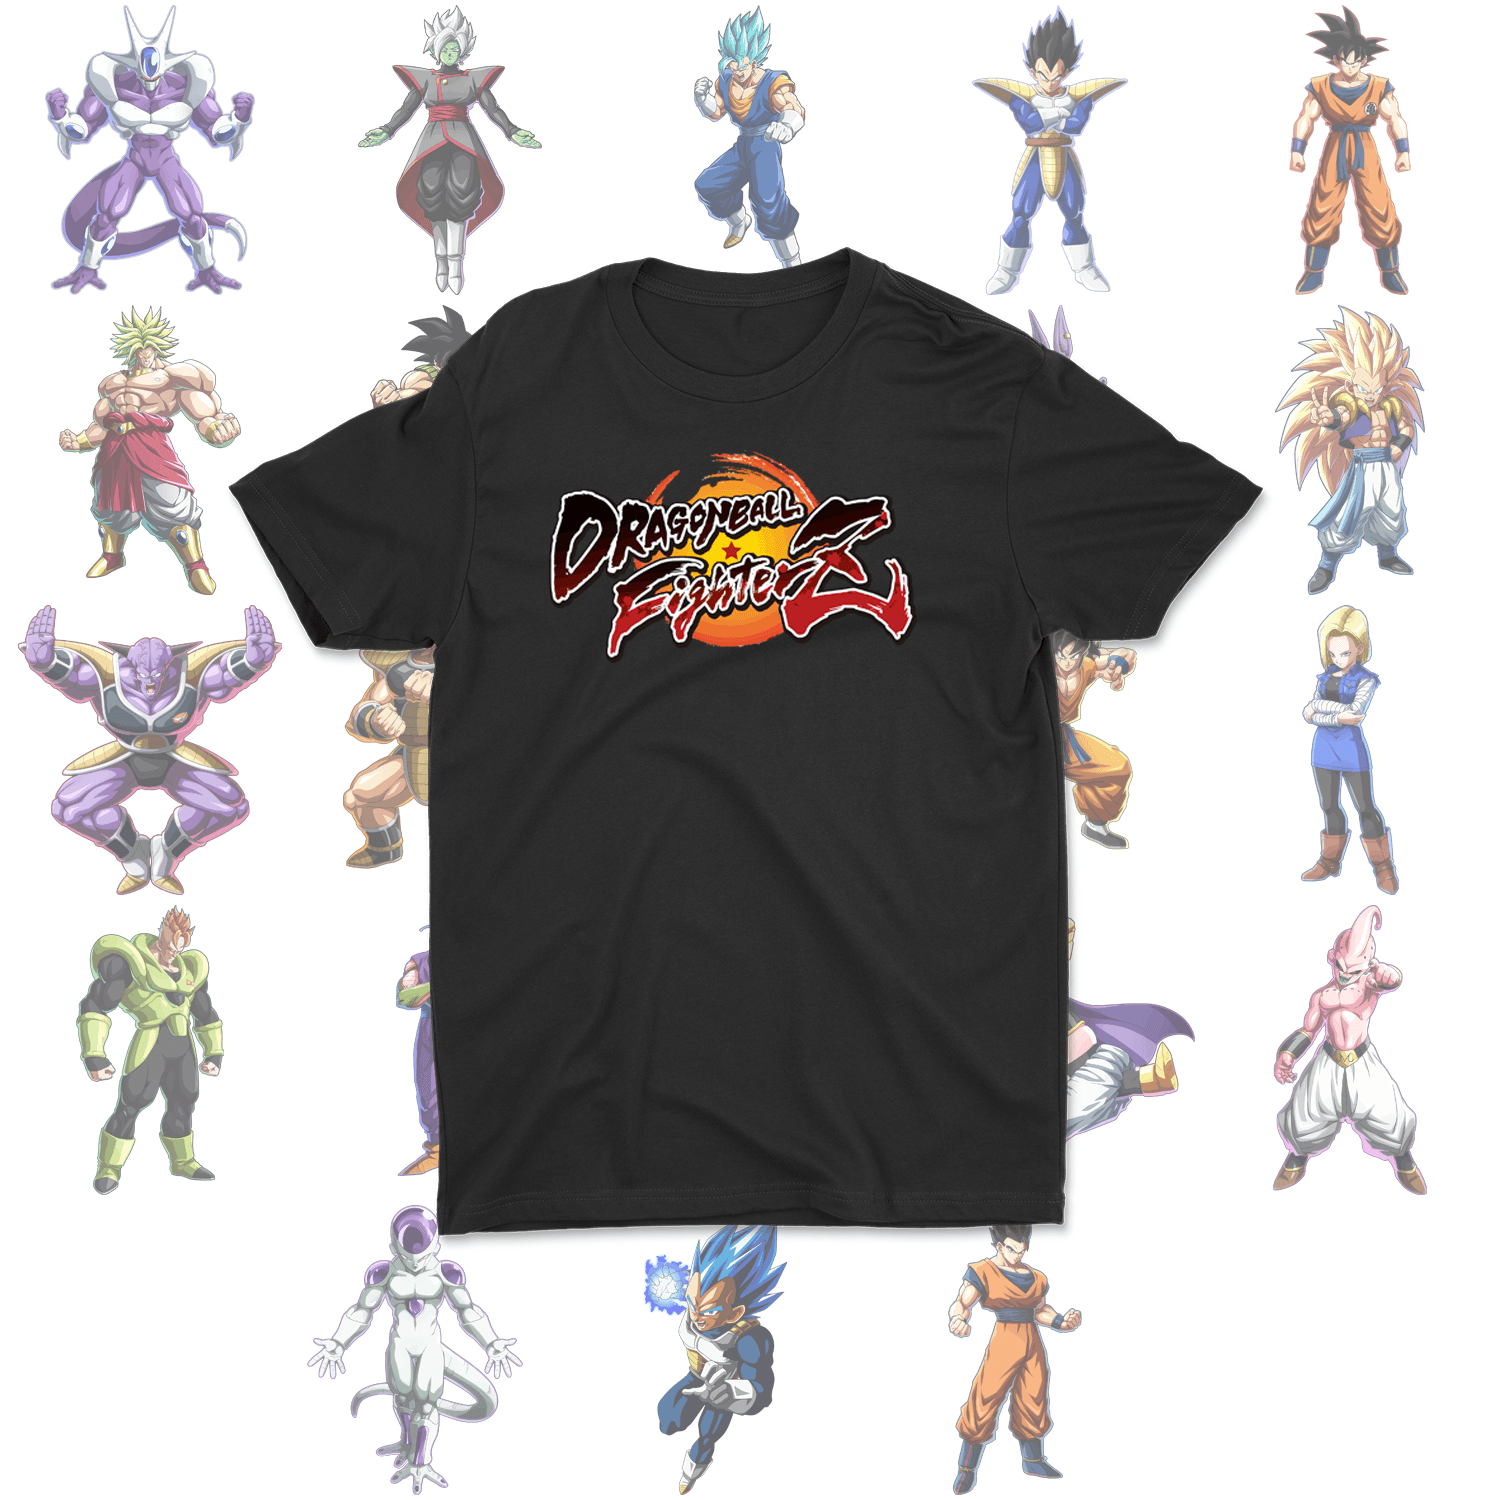 Dragon Ball FighterZ T-Shirt Collection - TopTierPrintLab